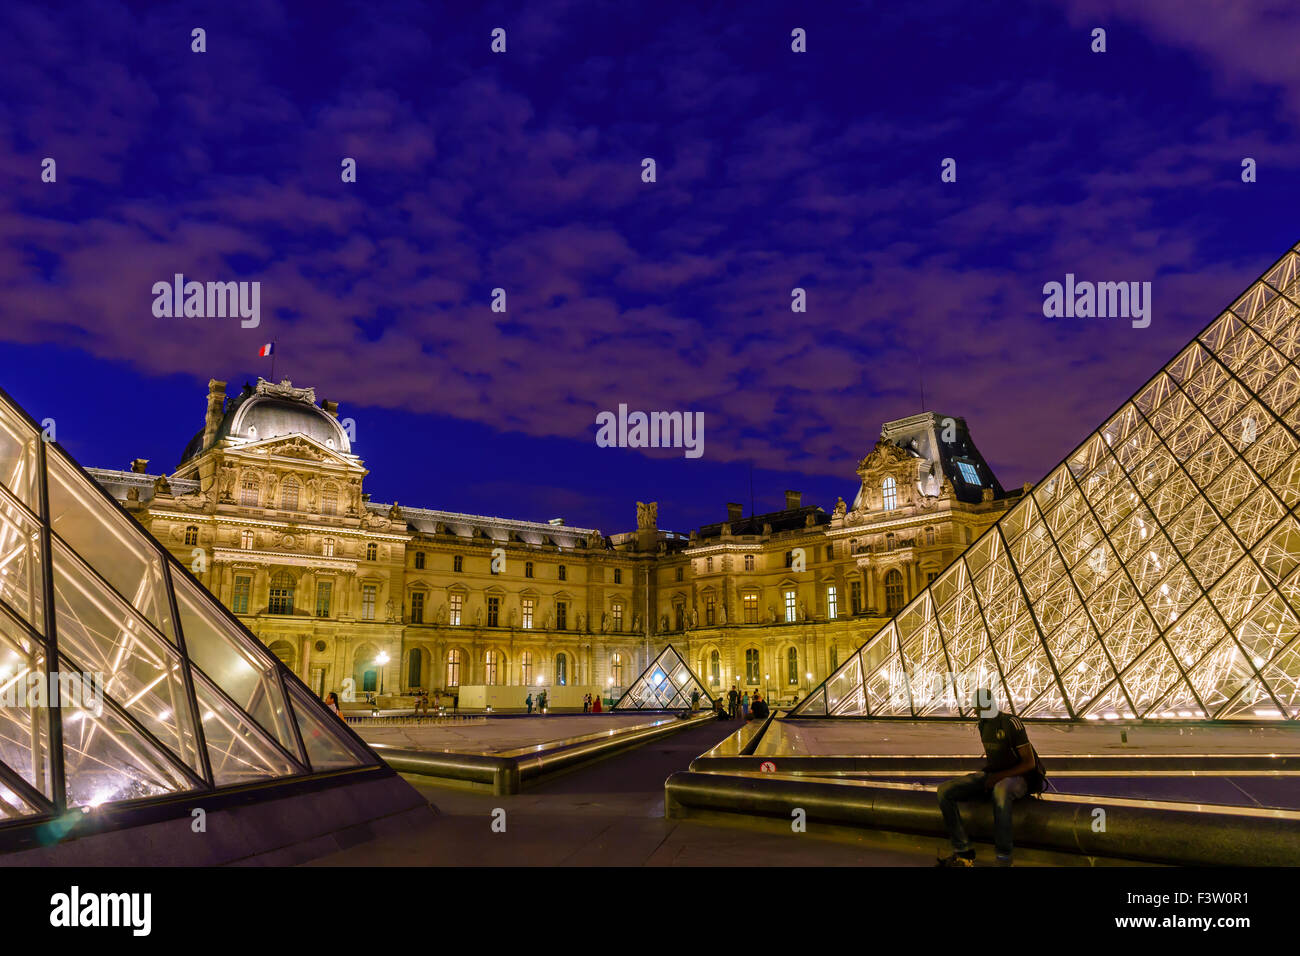 Les nuages pourpres ornent le ciel d'été au Musée du Louvre, au crépuscule. Paris, France. Août, 2015. Banque D'Images